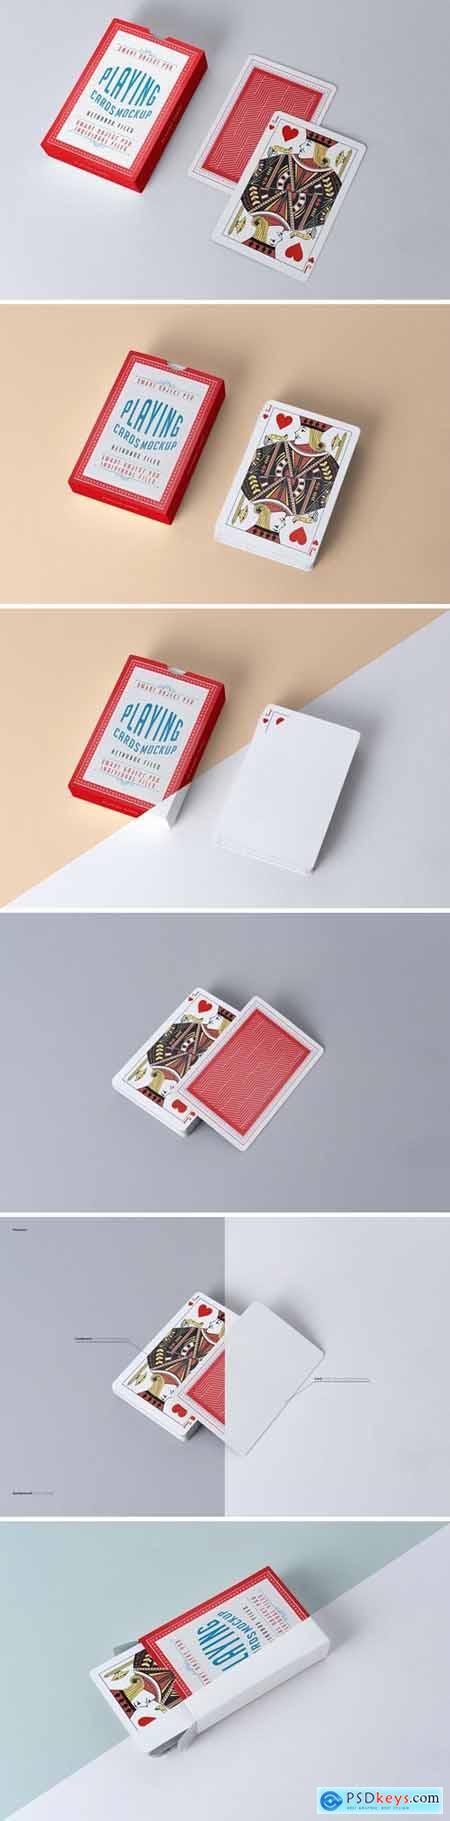 Gamble Cards Mockup QJUS3G4